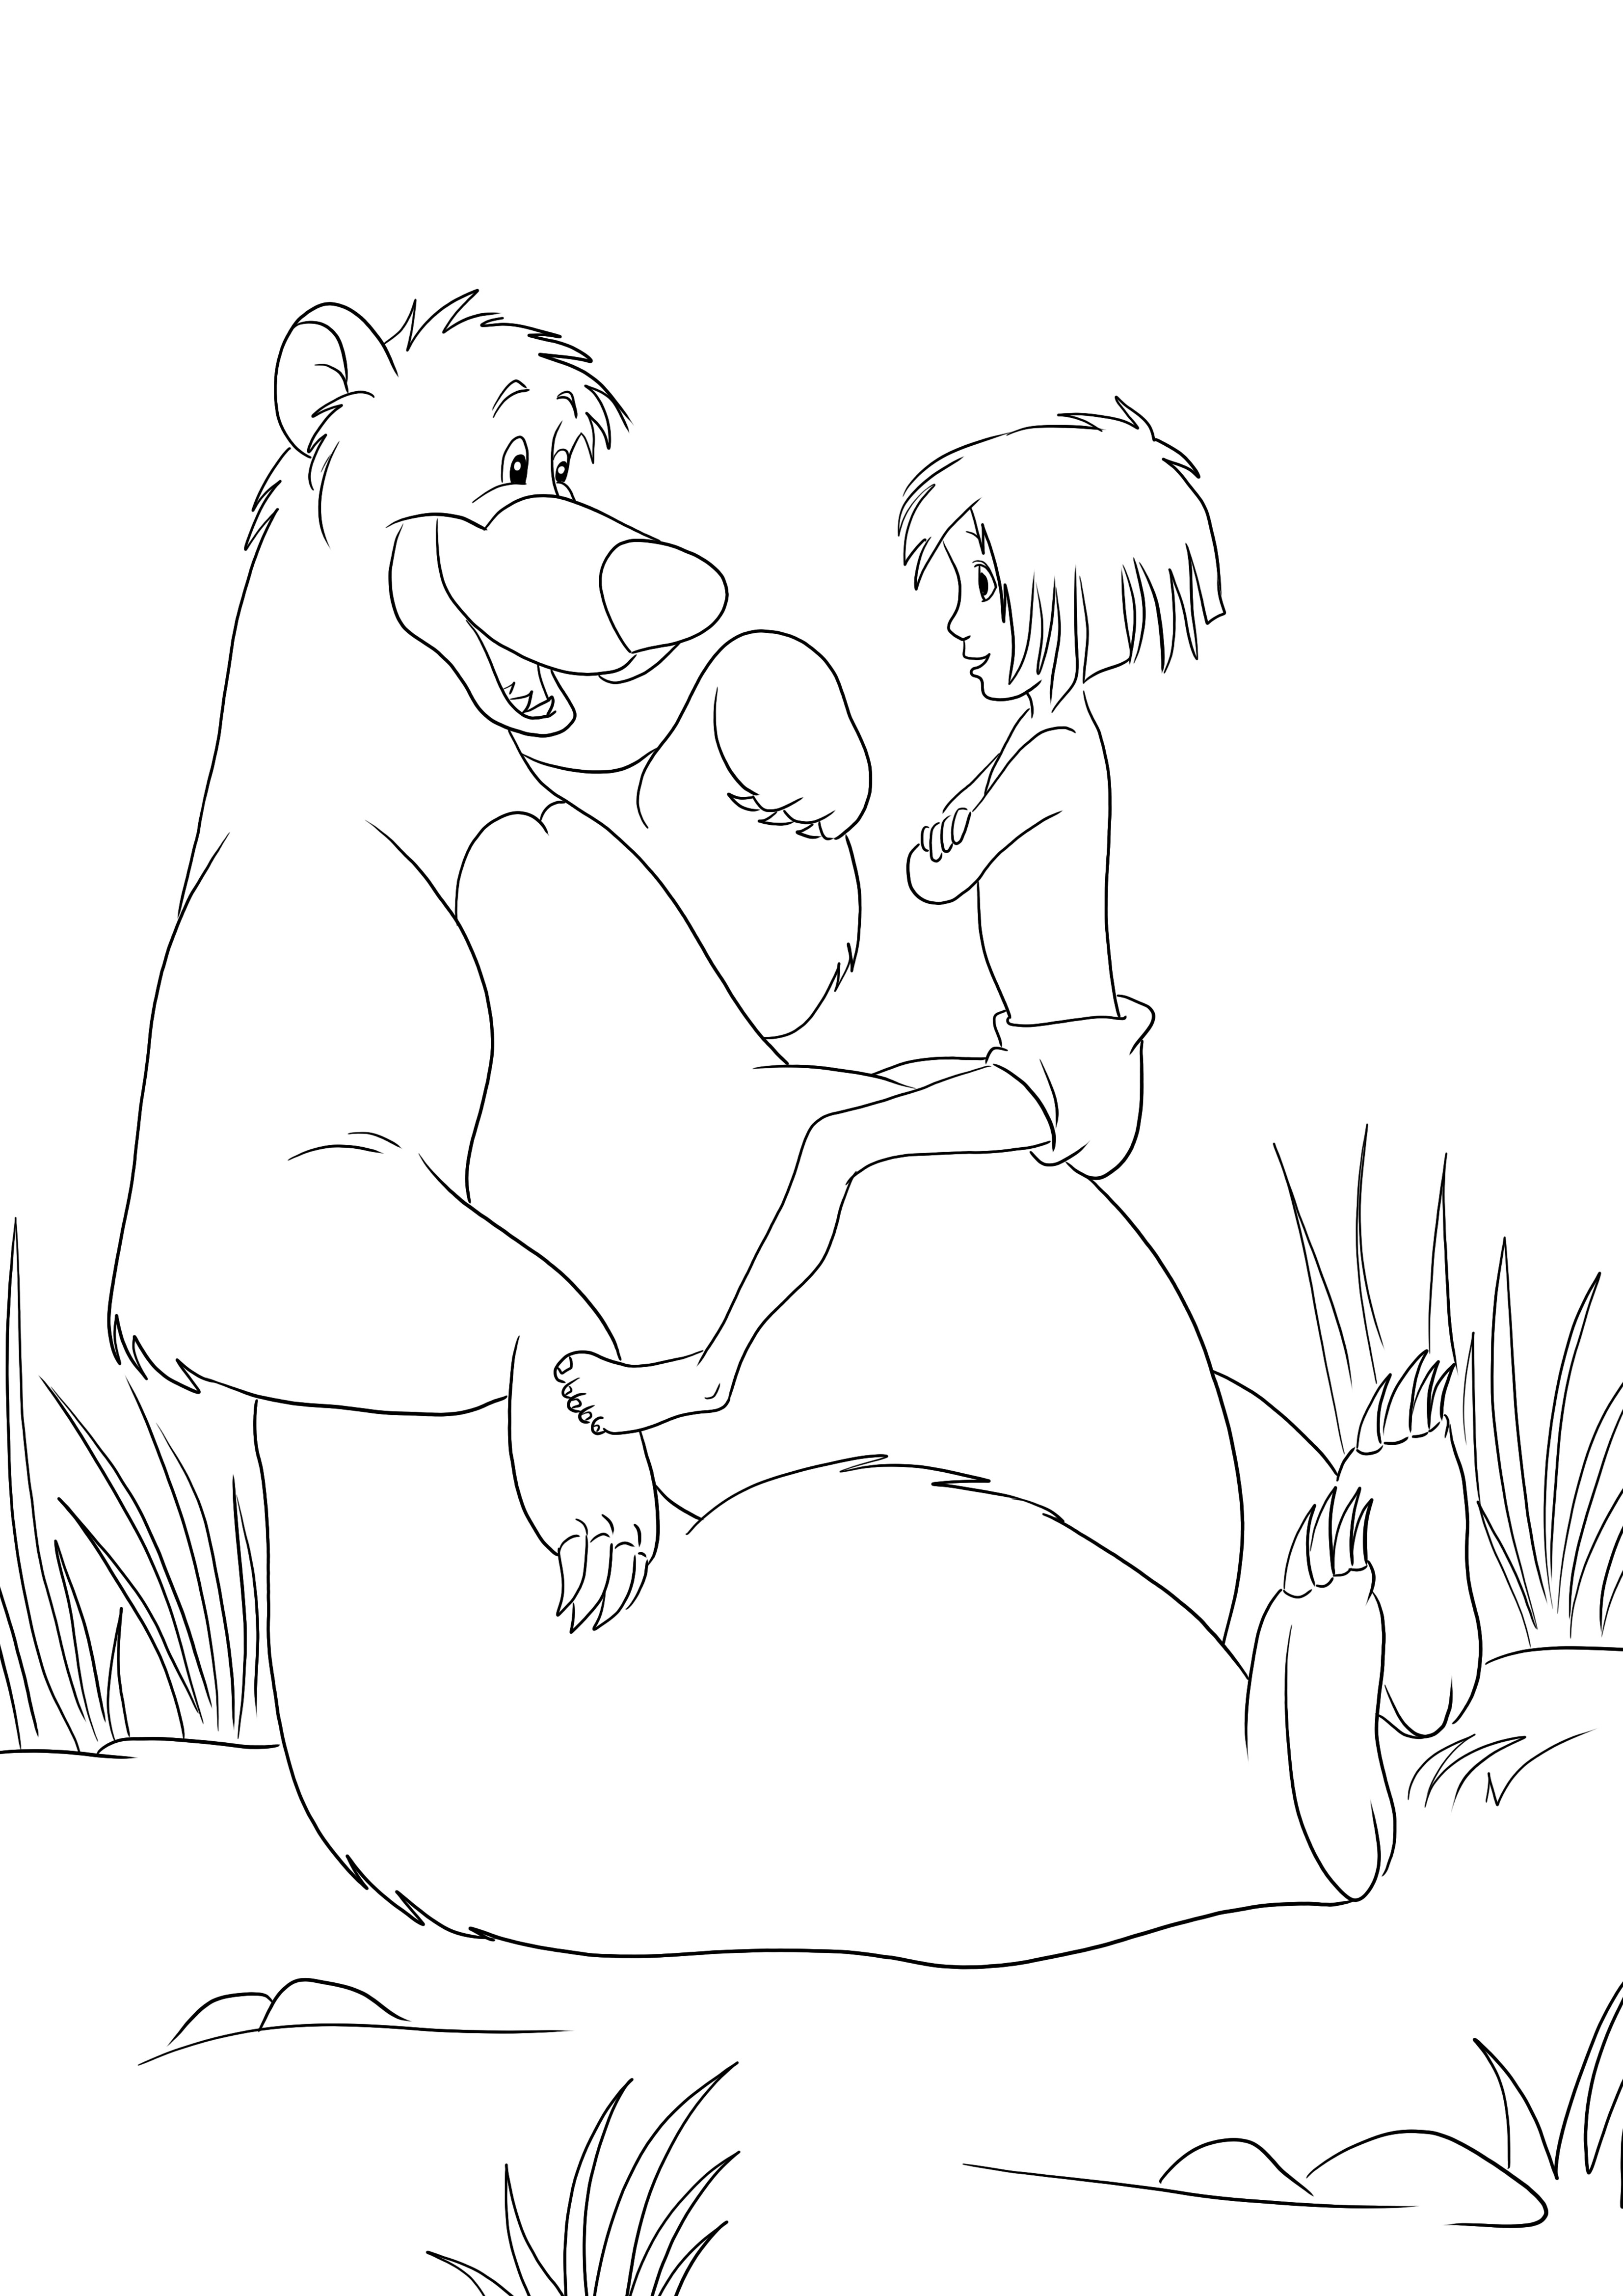 Niedźwiedzie Mowgli i Balu można bezpłatnie pobrać lub wydrukować i pokolorować dla dzieci